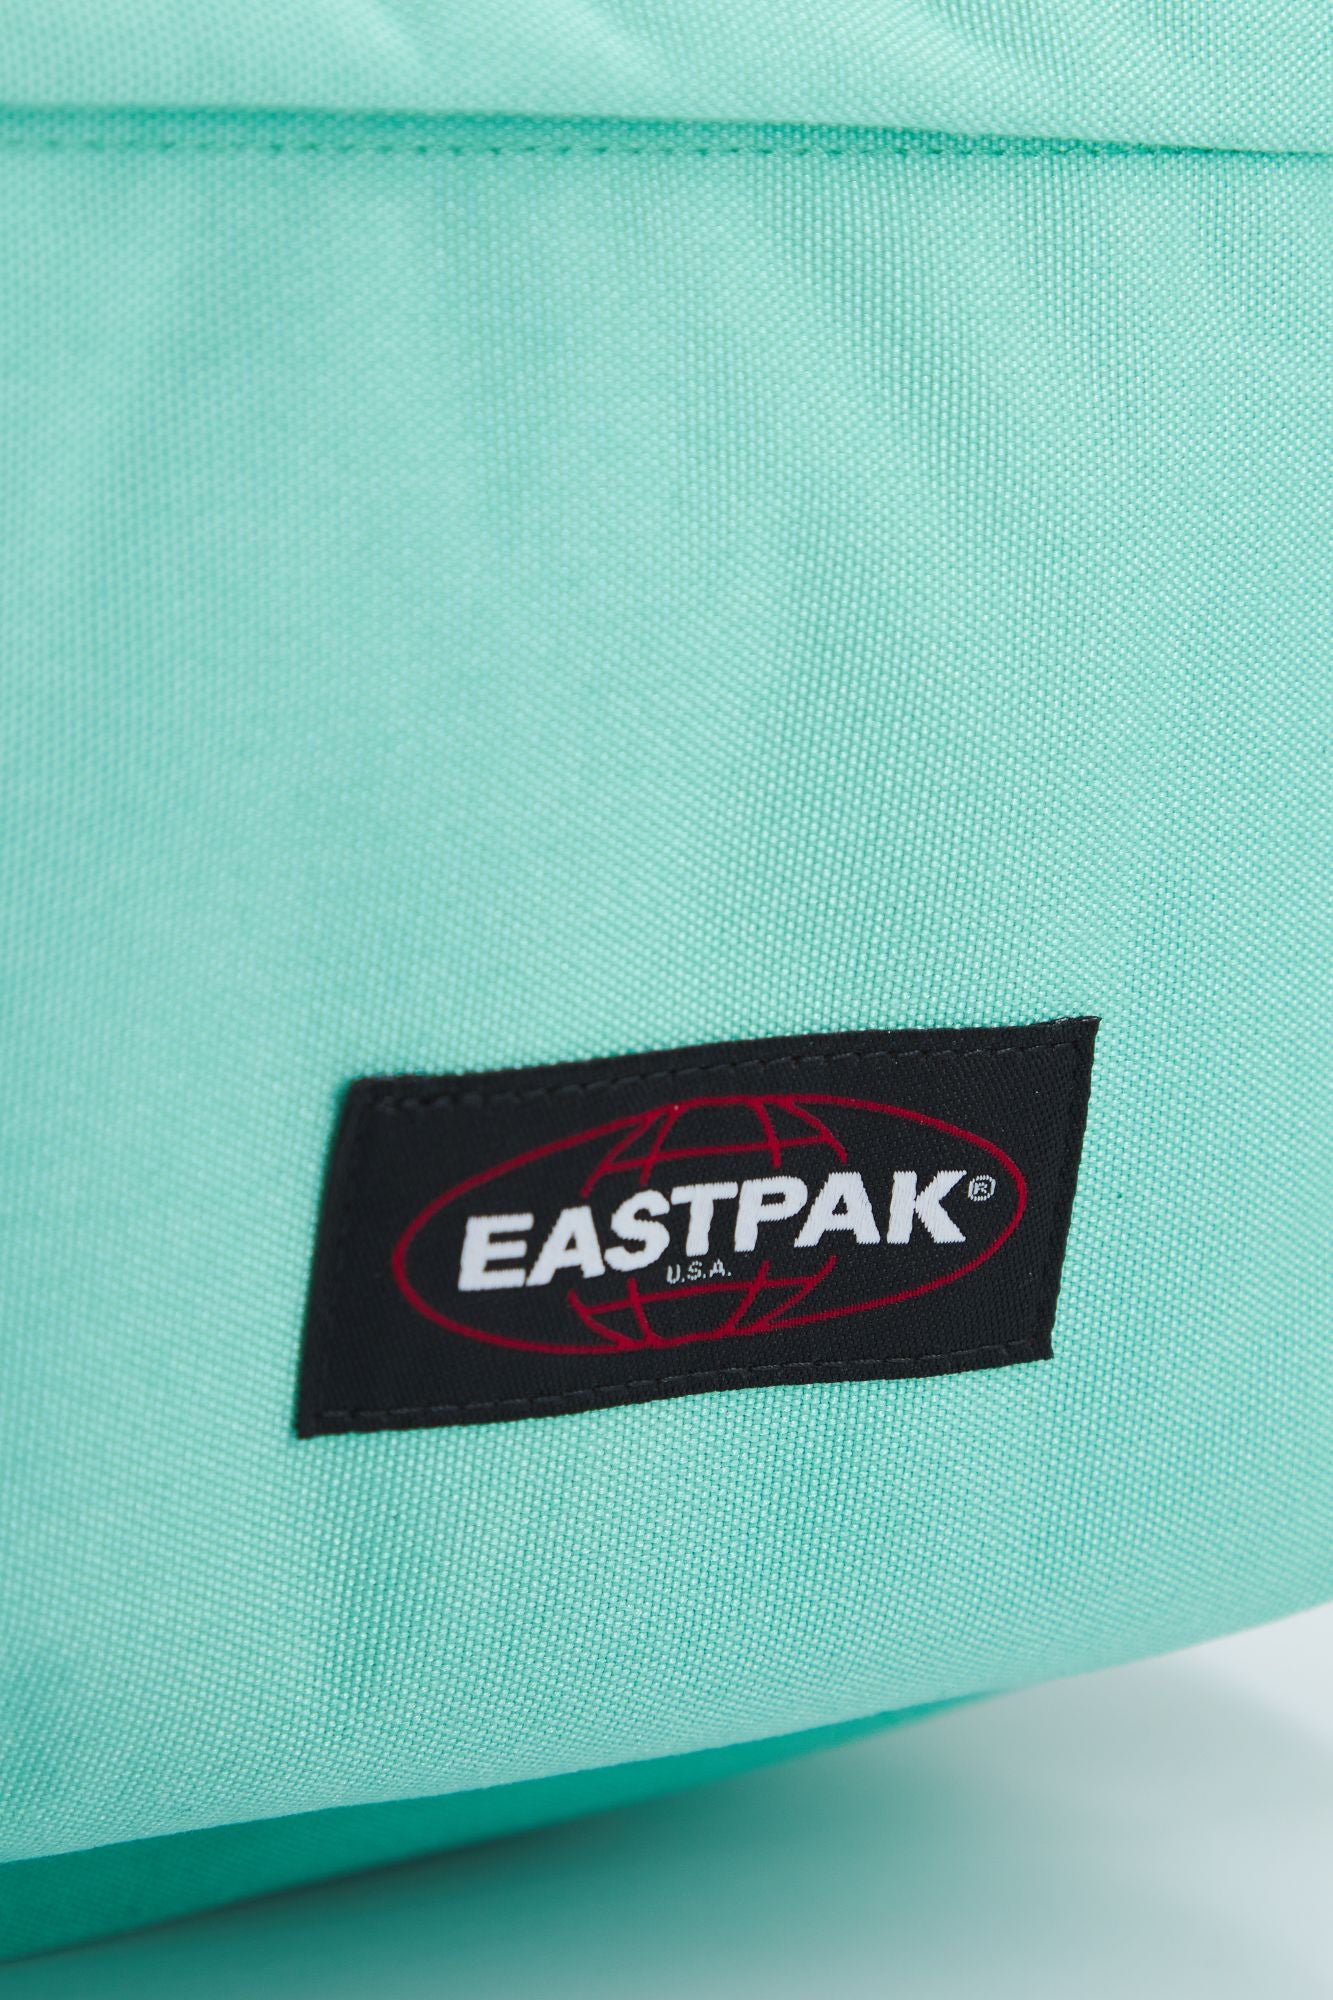 EASTPAK  PADDED PAK'R en color VERDE (3)